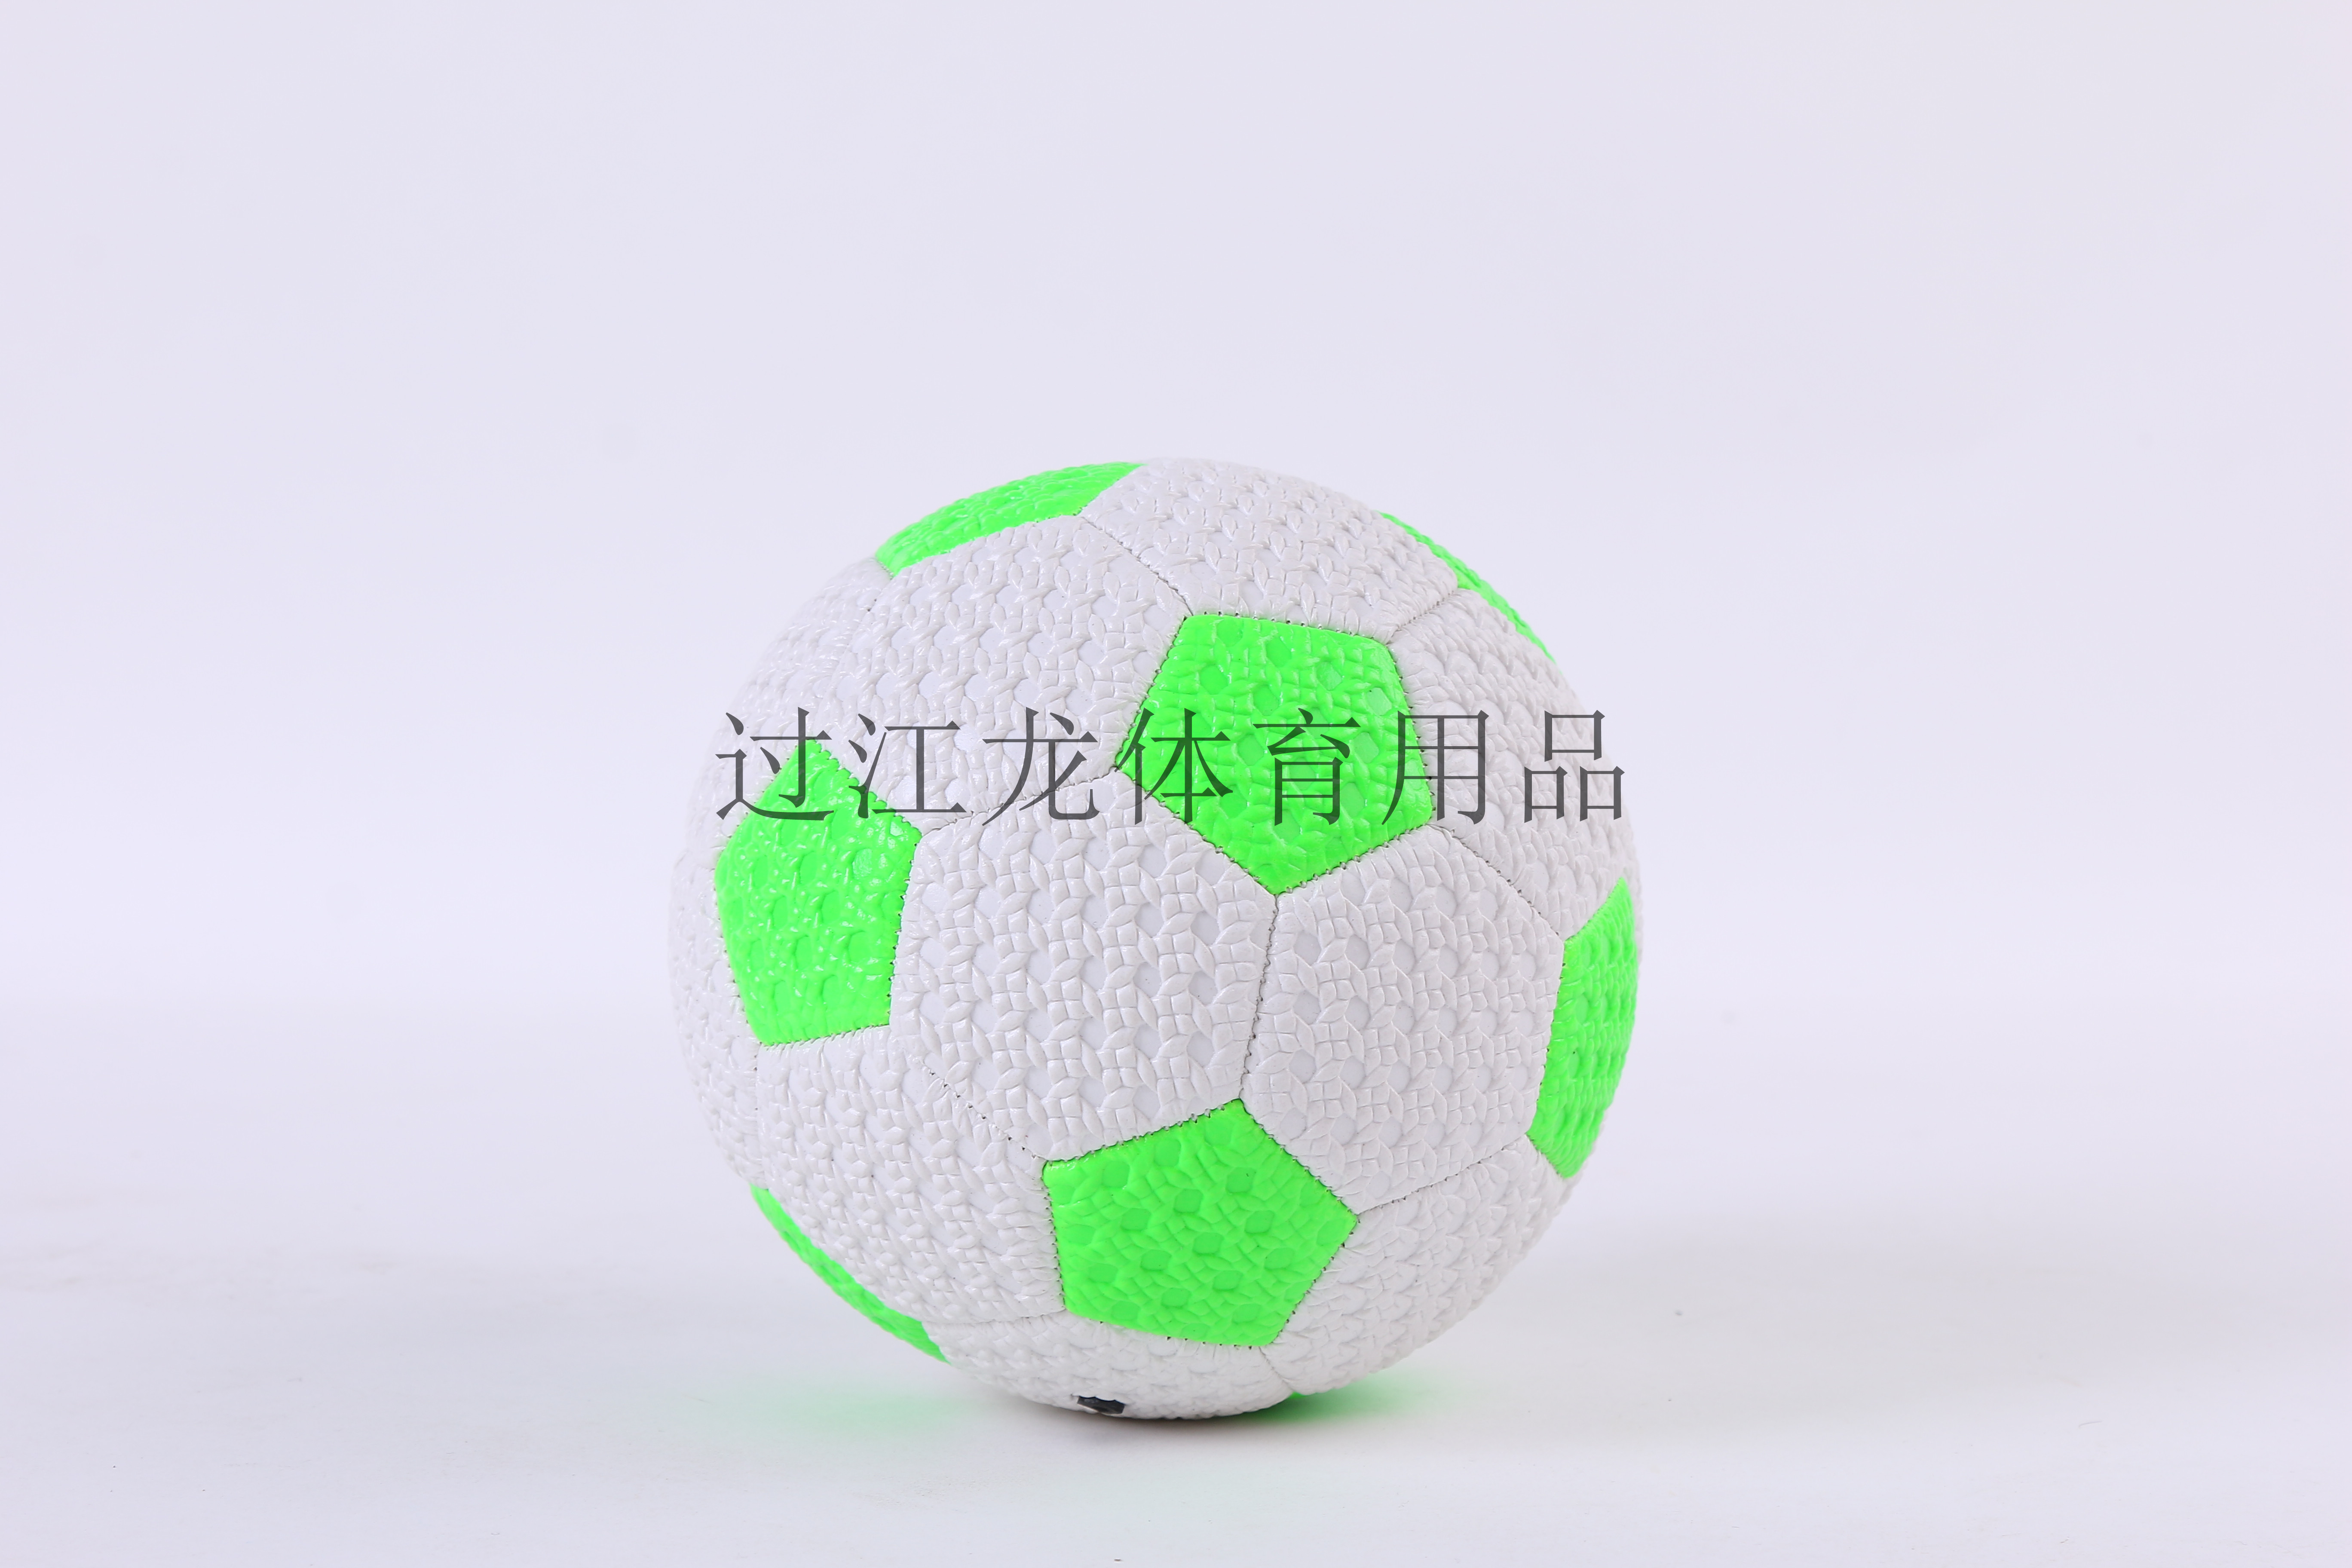 ev18001 yiwu ev football/ballon de football trophée base de marbre